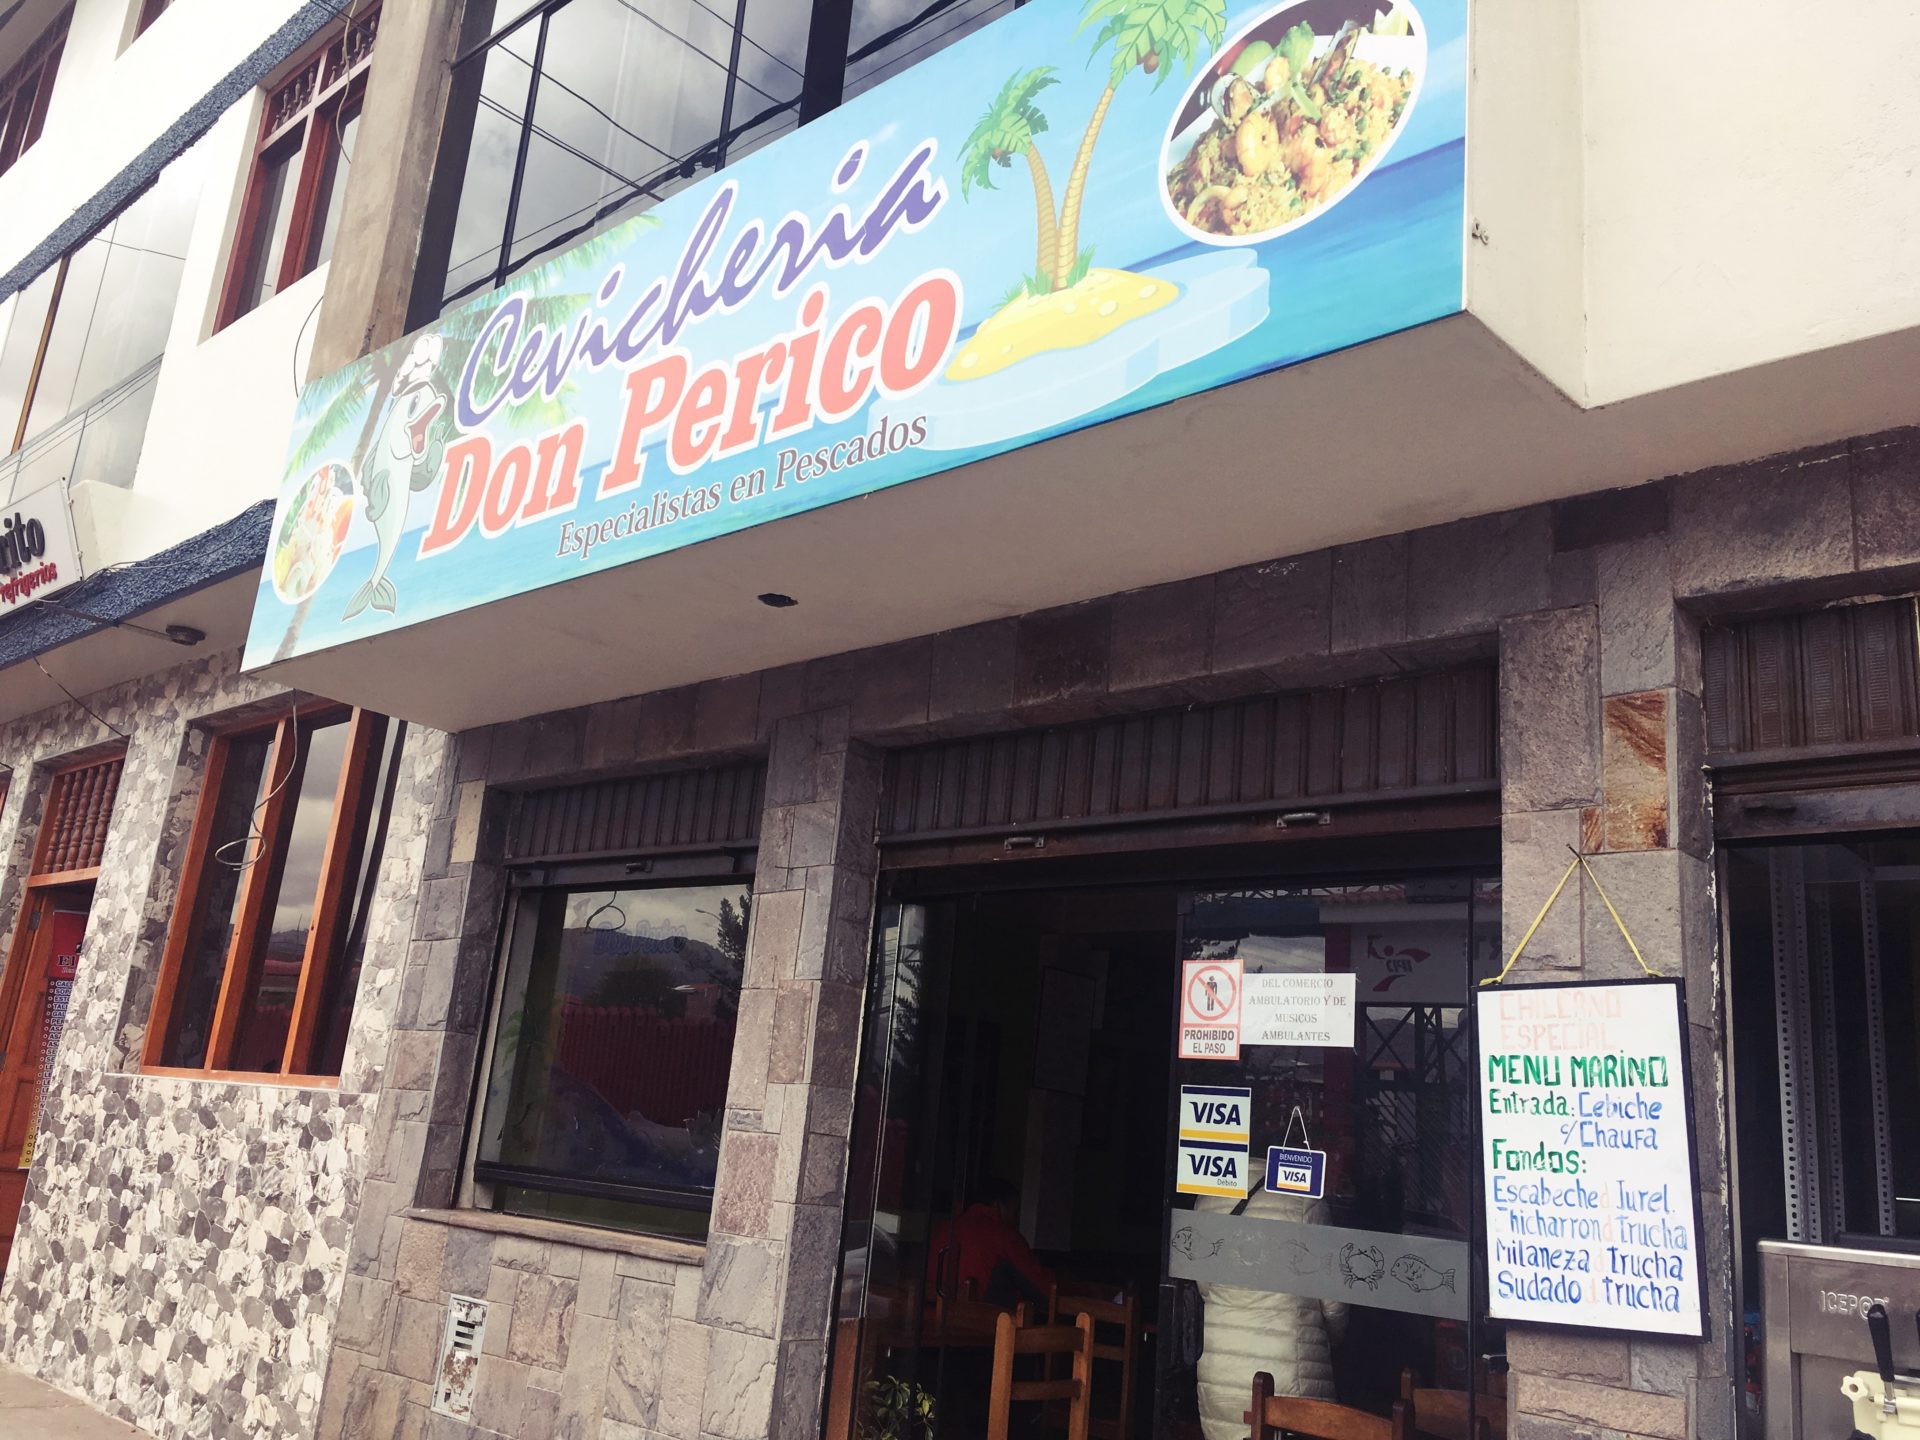 ペルー, クスコ, おいしい, 地元, 人気, セビーチェ, レストラン